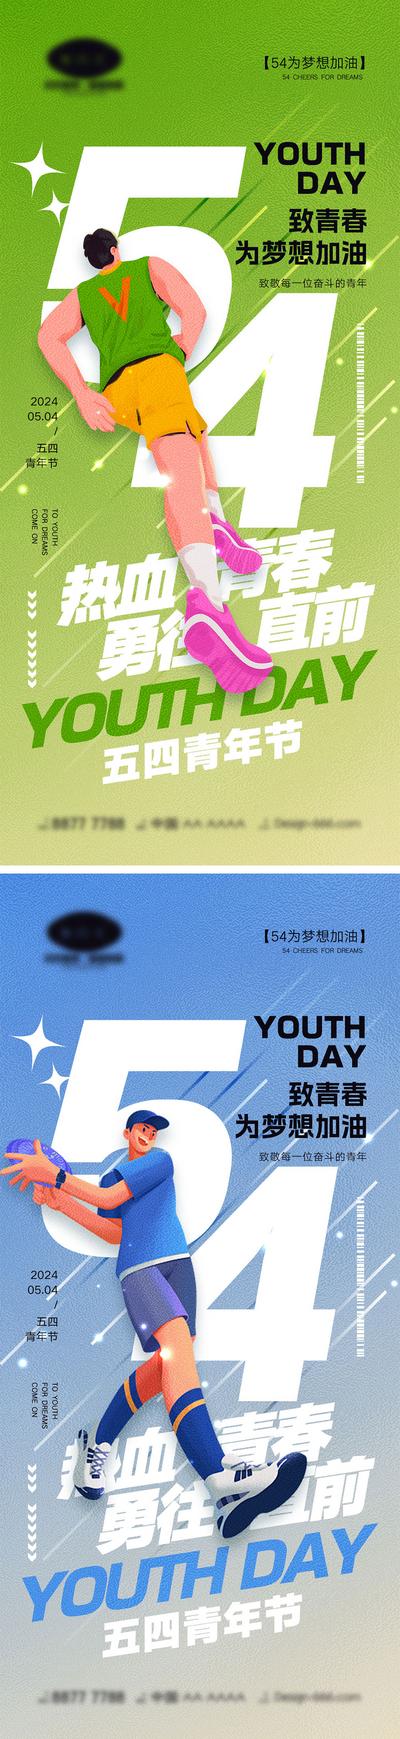 【南门网】广告 海报 运动 青年节 大字报 公历节日 54 五四 年轻人 青春 活力 激情 向上 积极